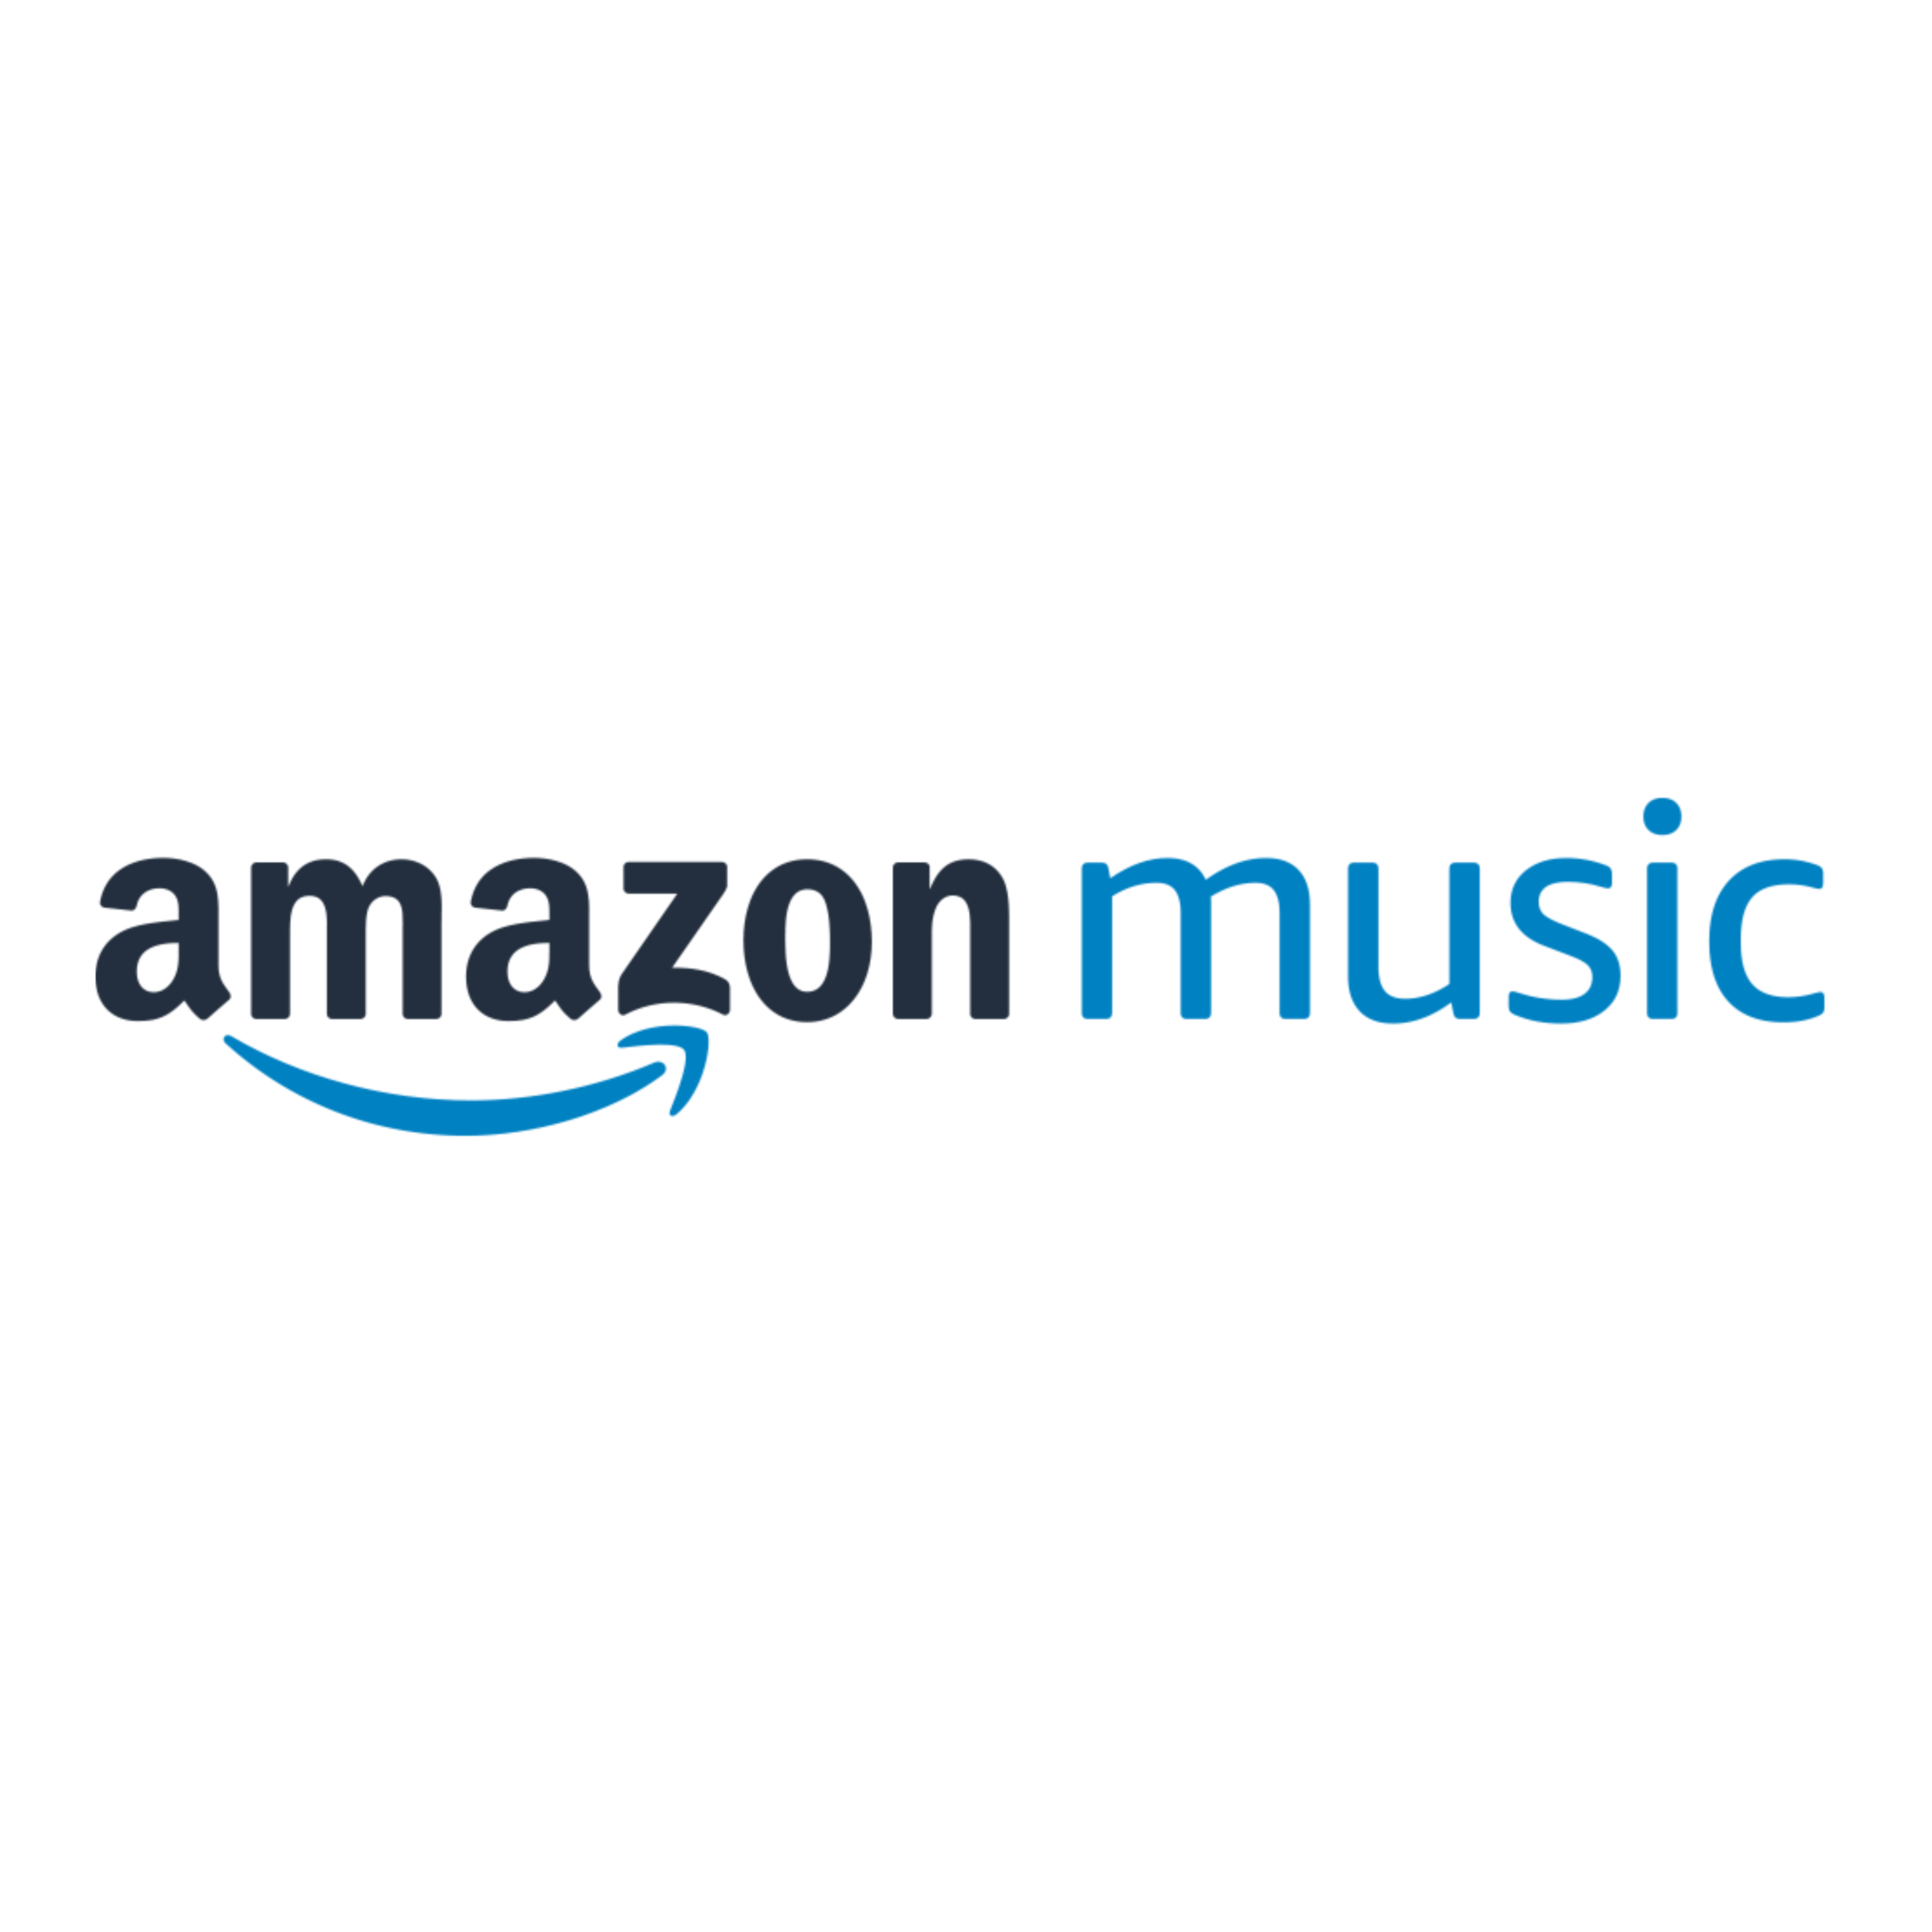 Amazon Music Logo - Amazon Music logo – 3 Minute Languages